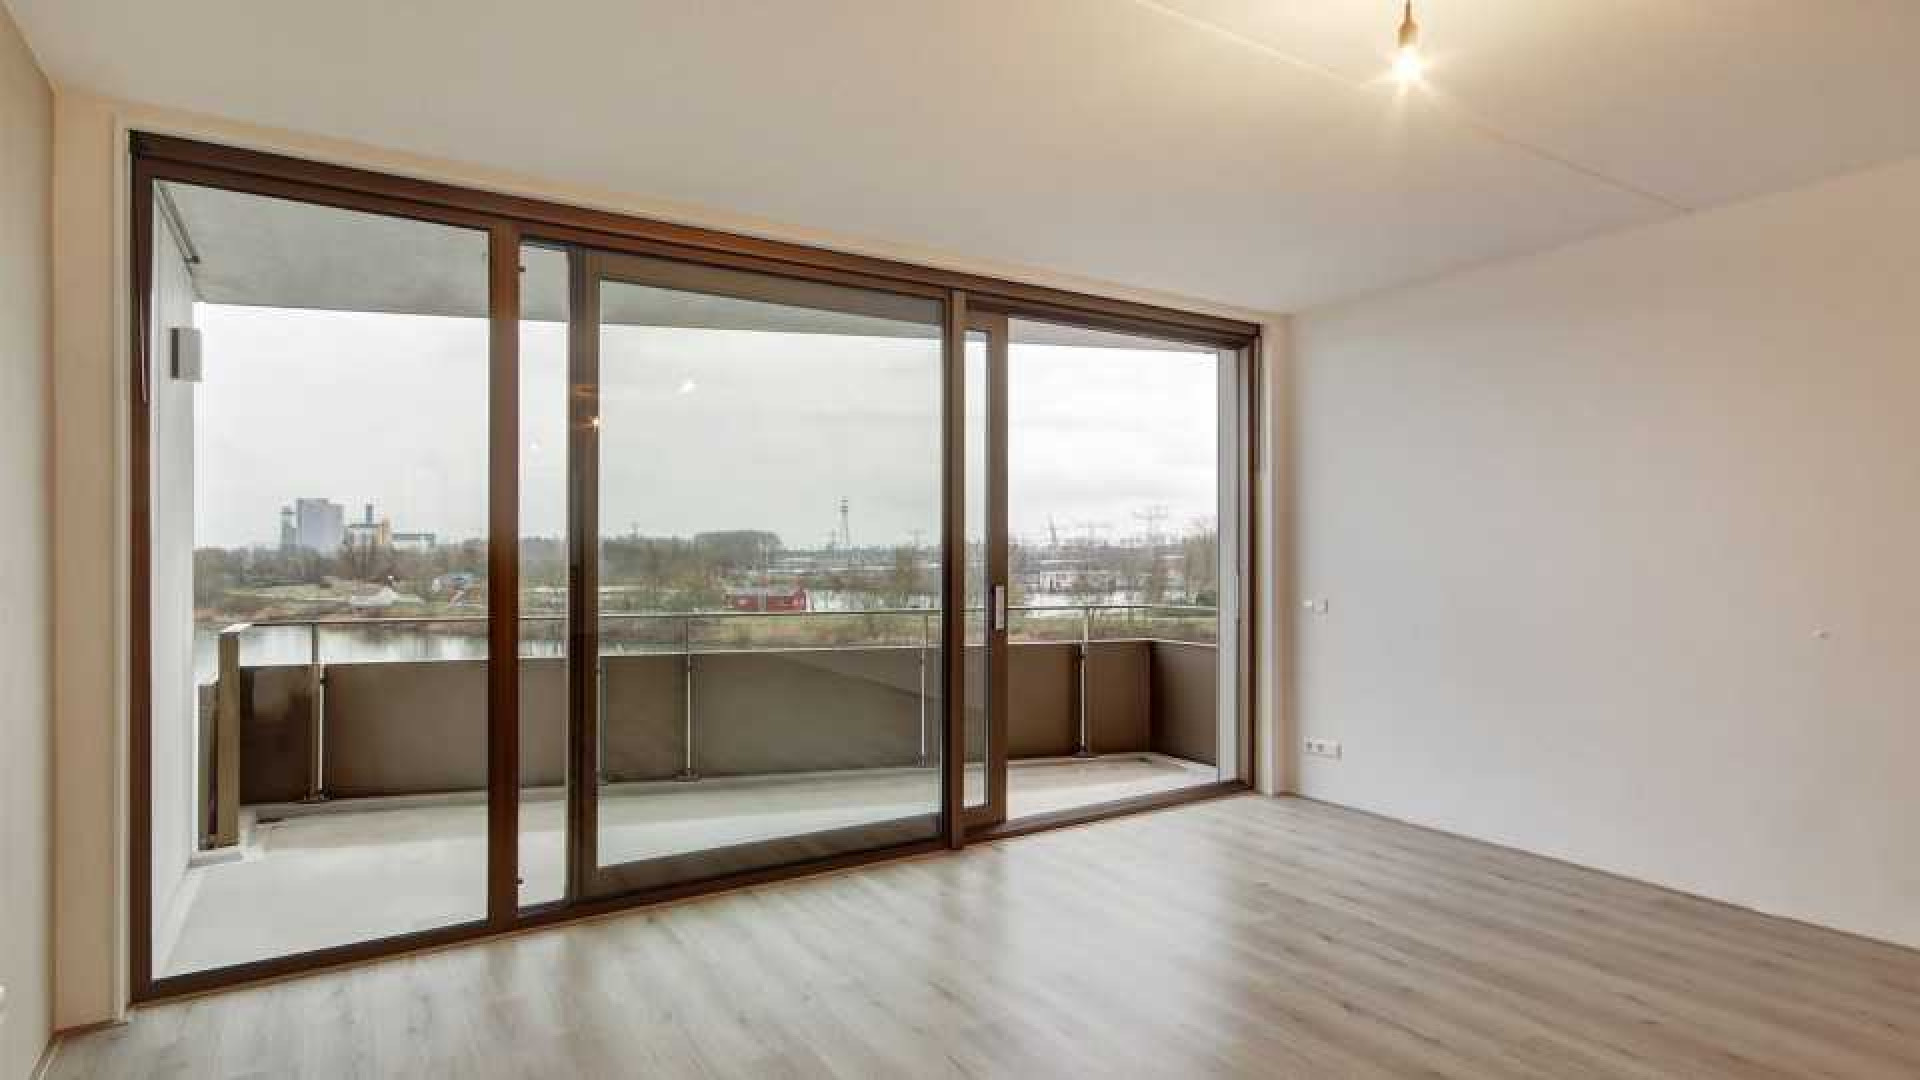 DJ Jean koopt luxe appartement met geweldig uitzicht in IJburg Amsterdam. Zie foto's